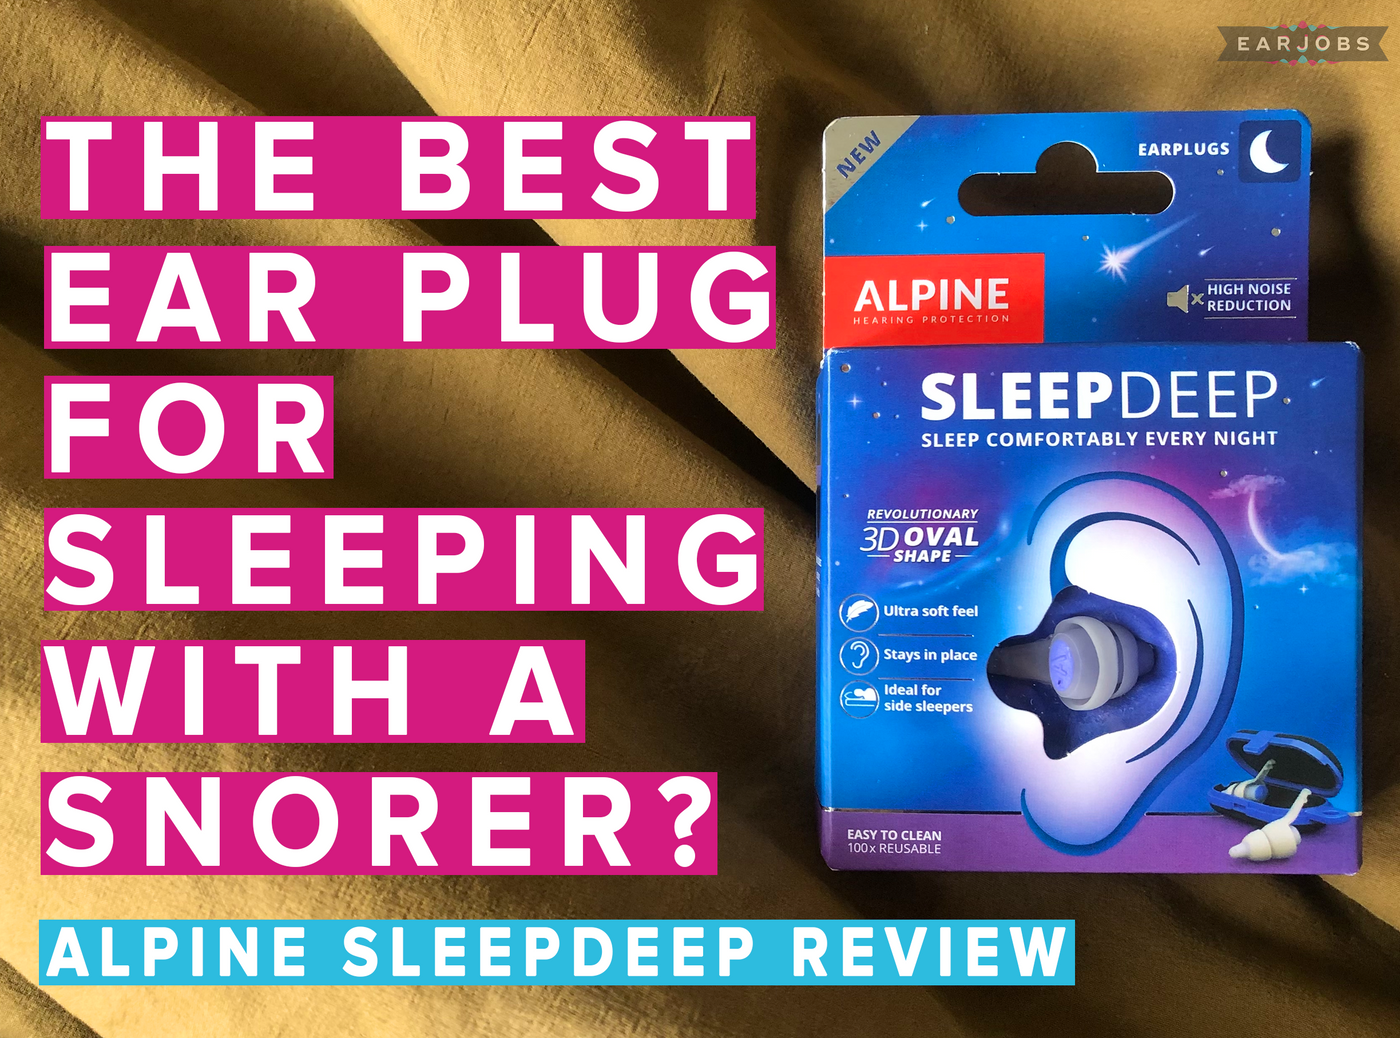 Sleeping with earplugs: Is it safe?